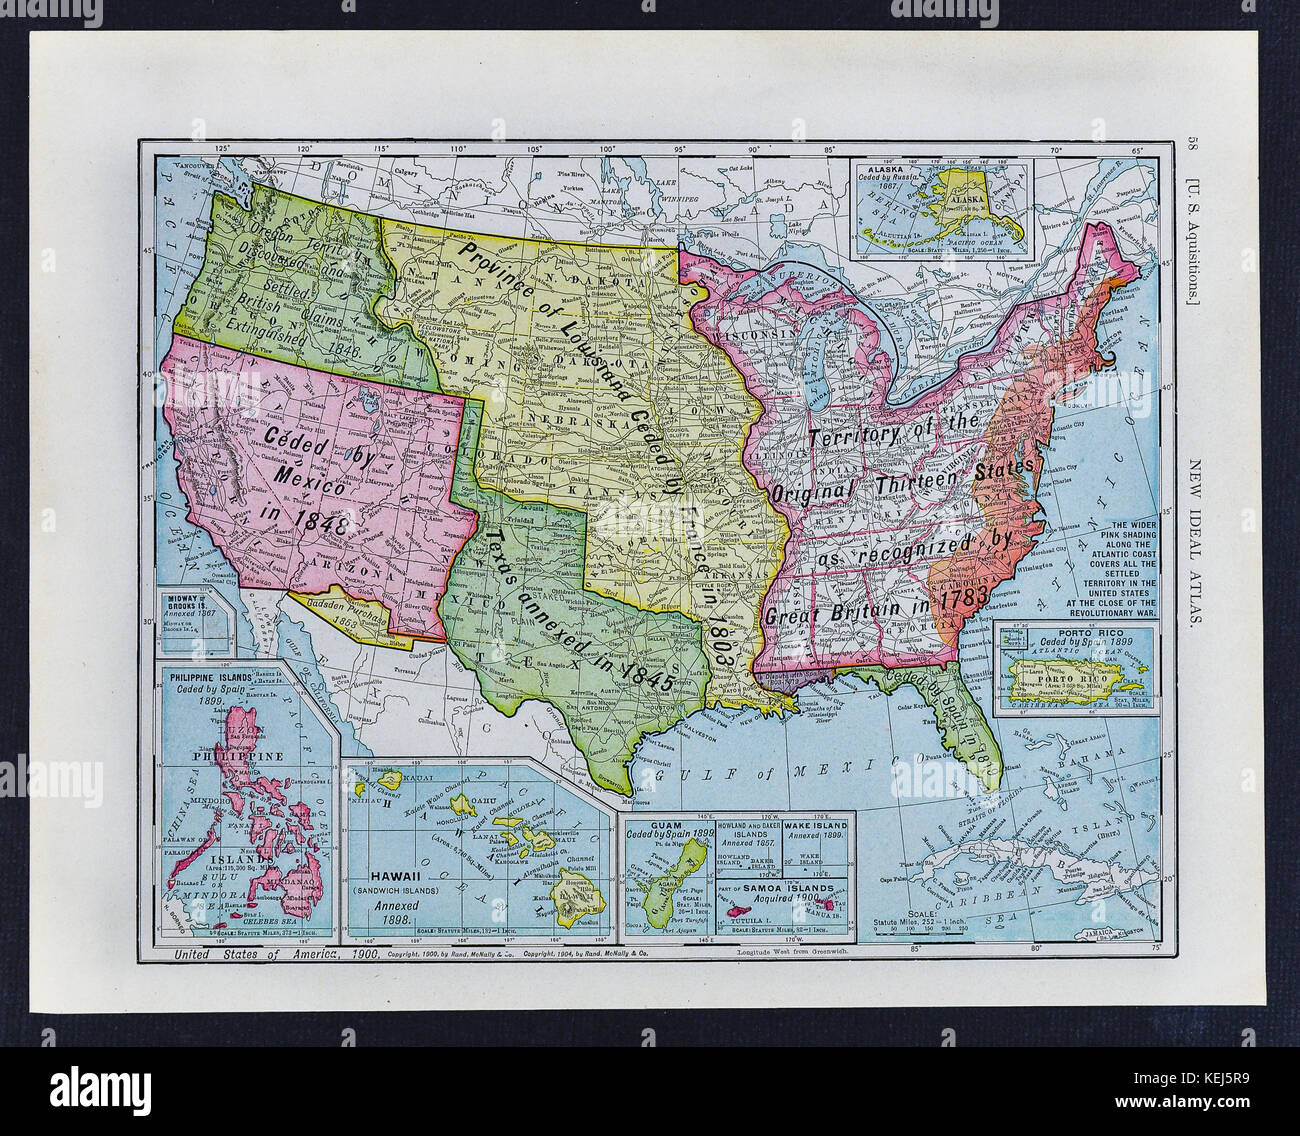 1911 McNally Antique Historical Map degli Stati Uniti che mostra le varie annessioni del territorio nel corso degli anni Foto Stock